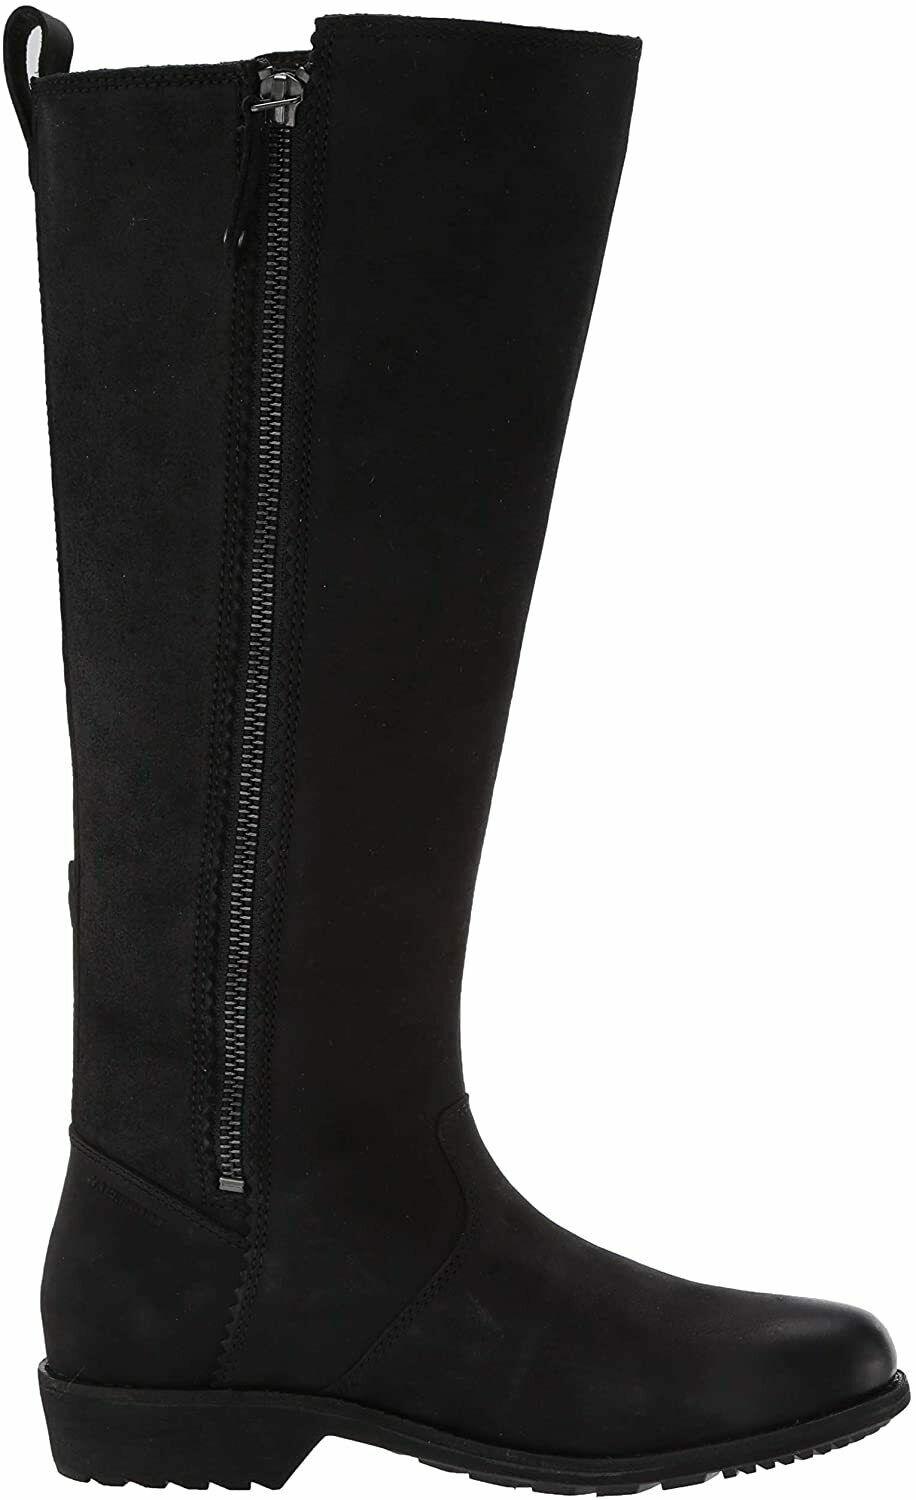 Teva Women's Ellery Tall Waterproof Burnished Boot Black Size US 5.5 - SVNYFancy